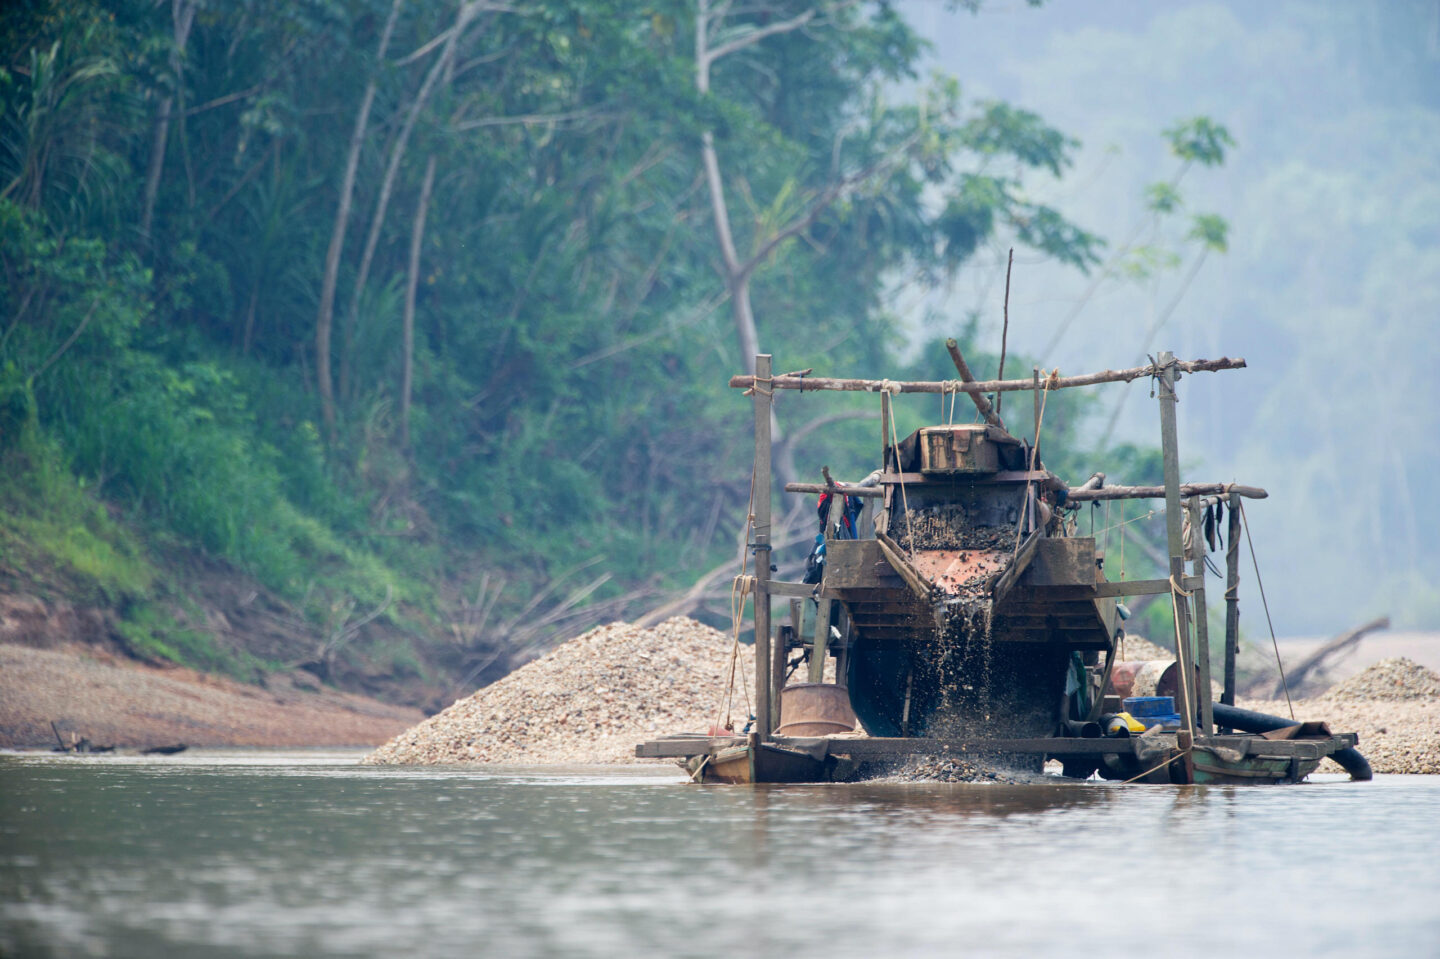 Draga artesanal para extraer oro en el río Madre de Dios en la Amazonía peruana